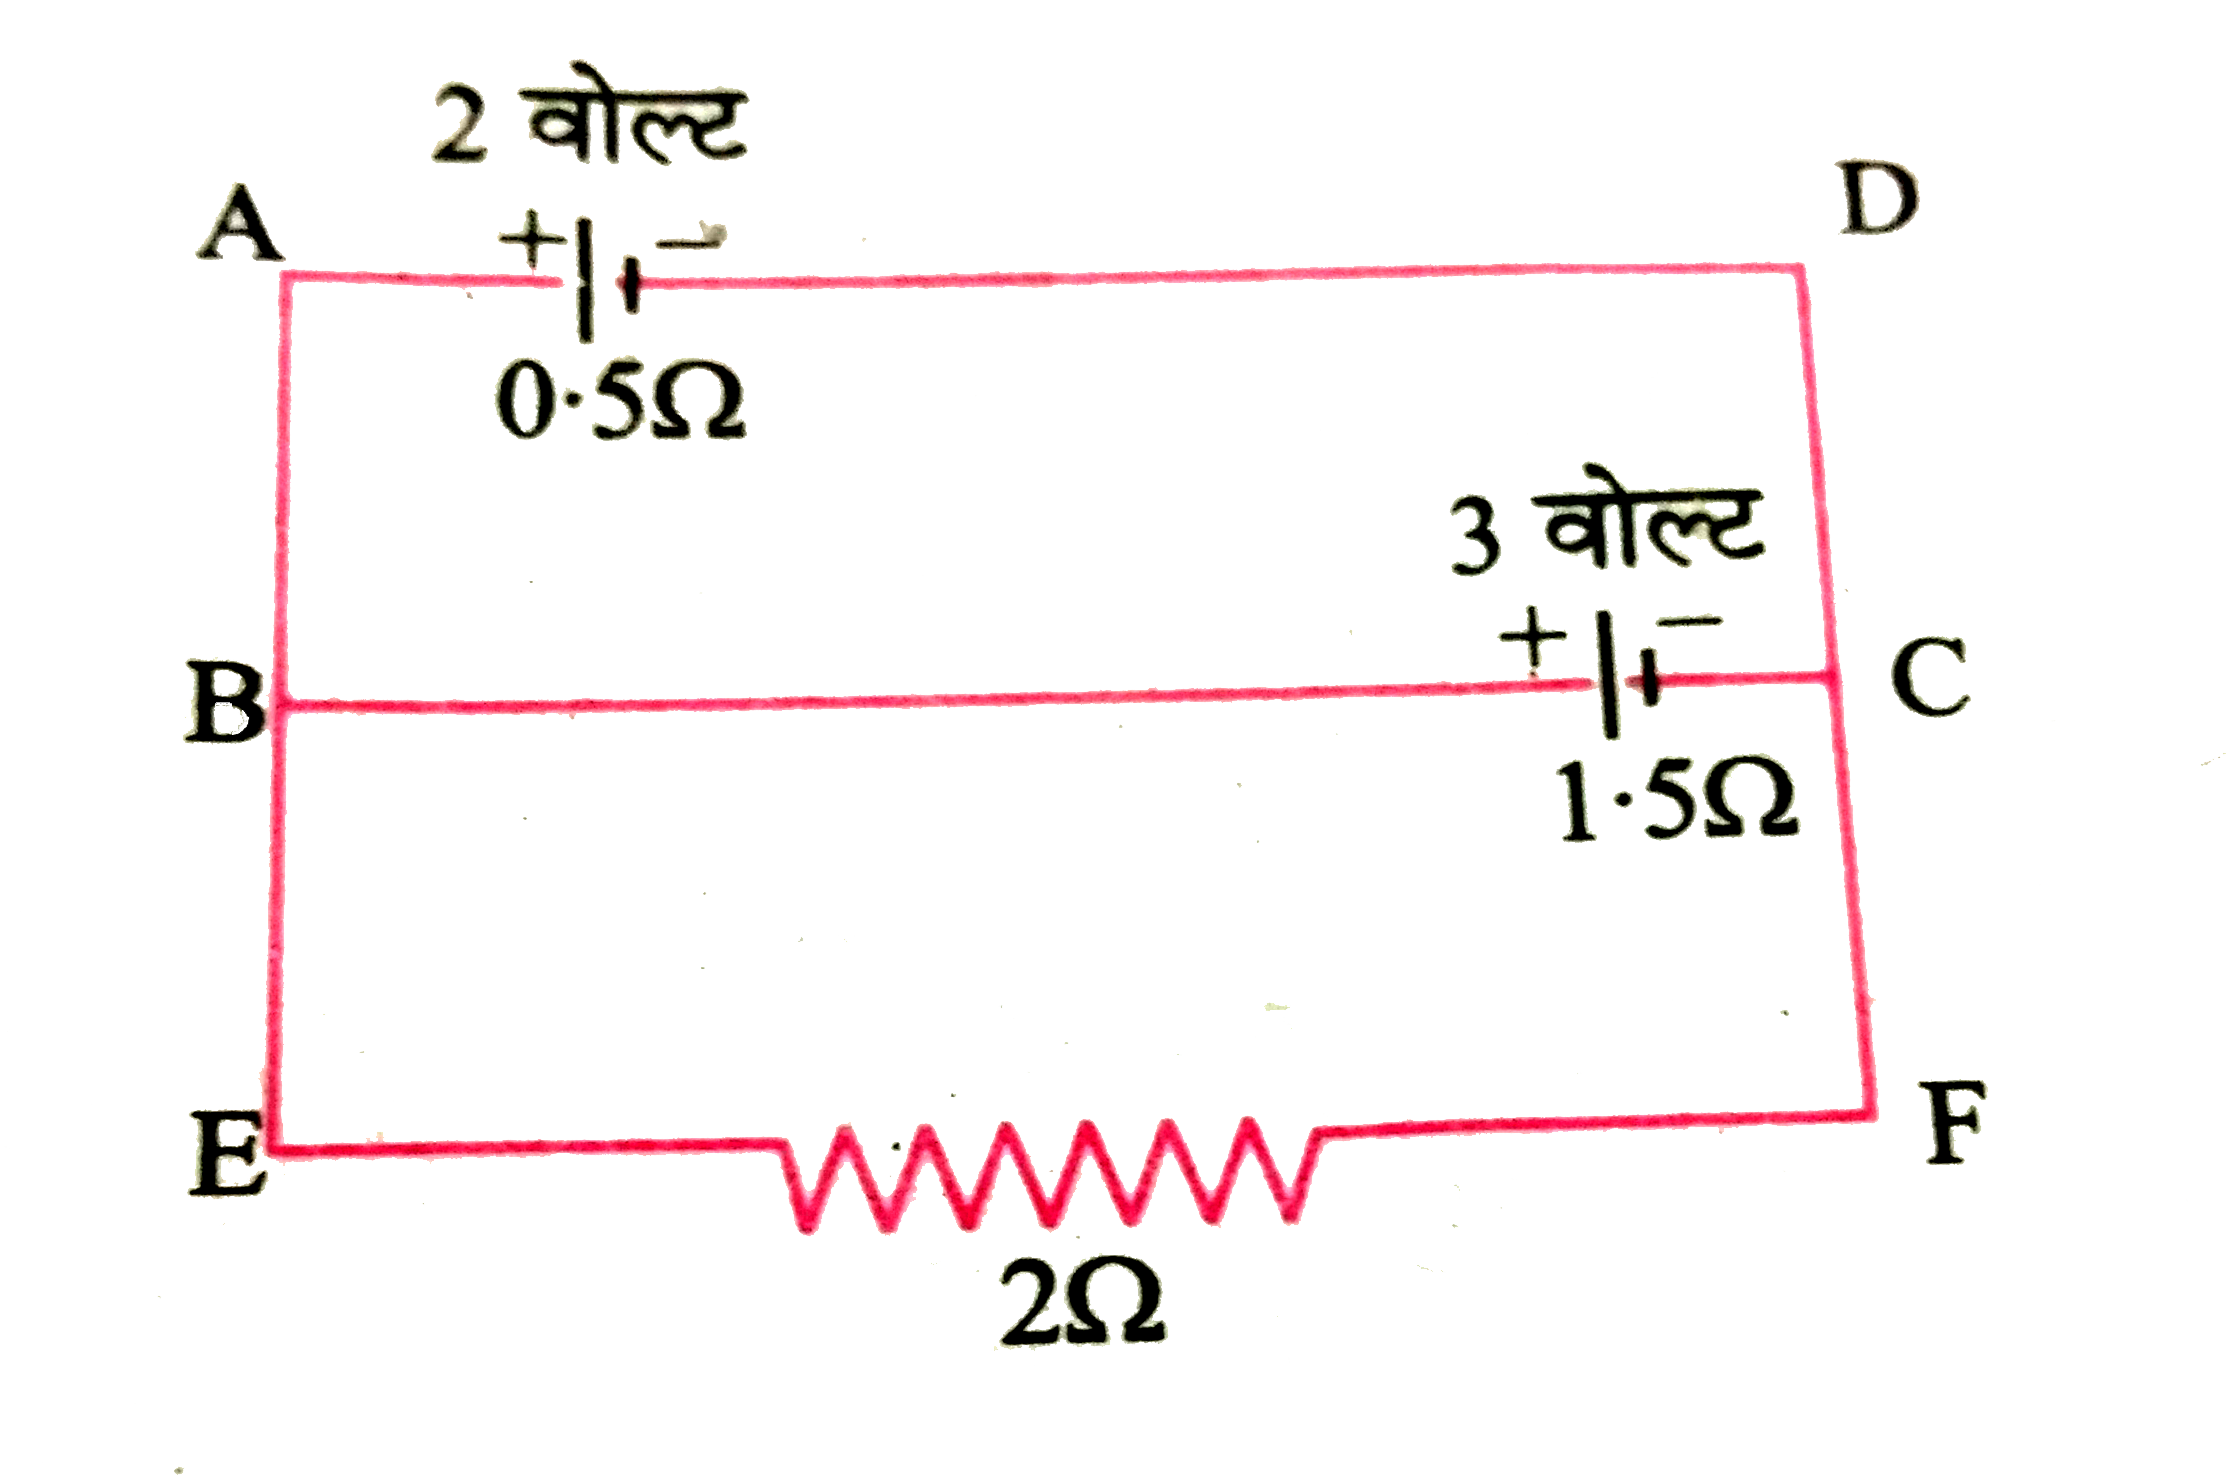 संलग्न चित्र में किरचॉफ  के नियमो  की सहायता  से बाह्य  प्रतिरोध तथा  प्र्तेक सेल से बहने  वाली धारा   की गणना   कीजिये ।